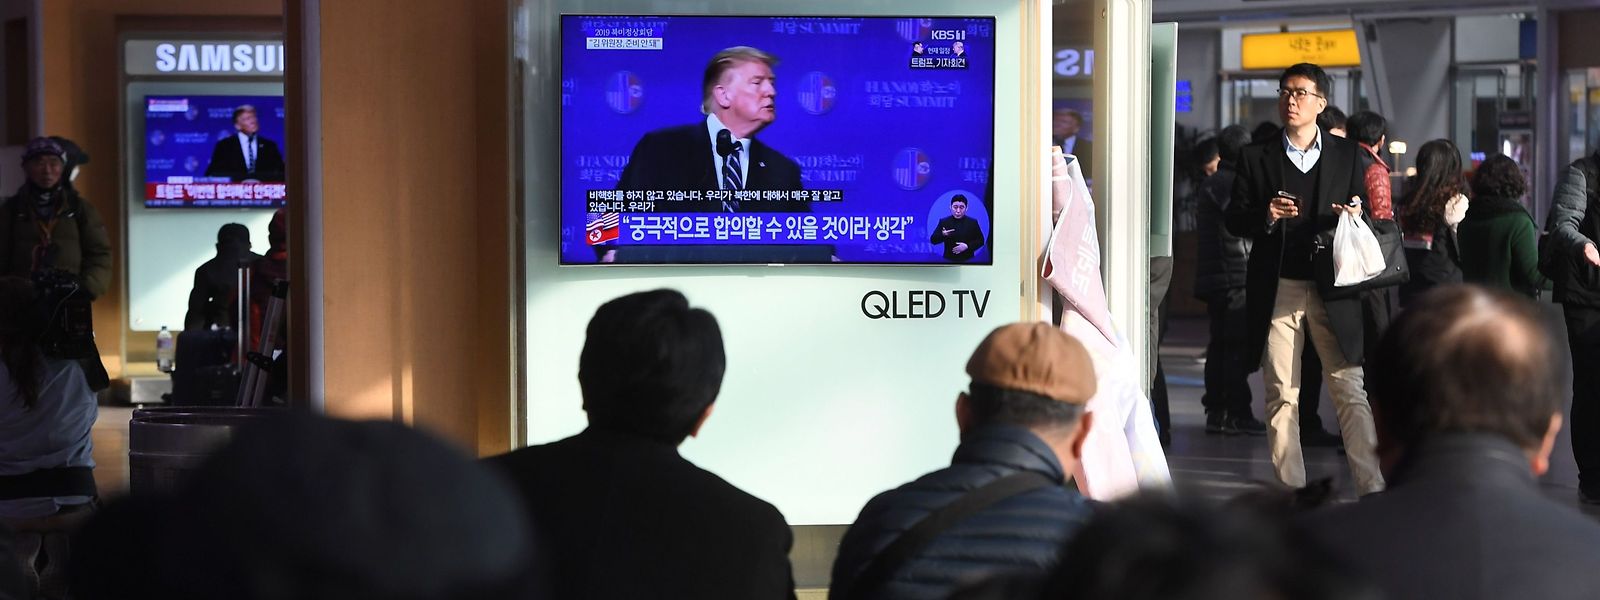 Die Pressekonferenz auf einem Fernsehschirm in Seoul. 